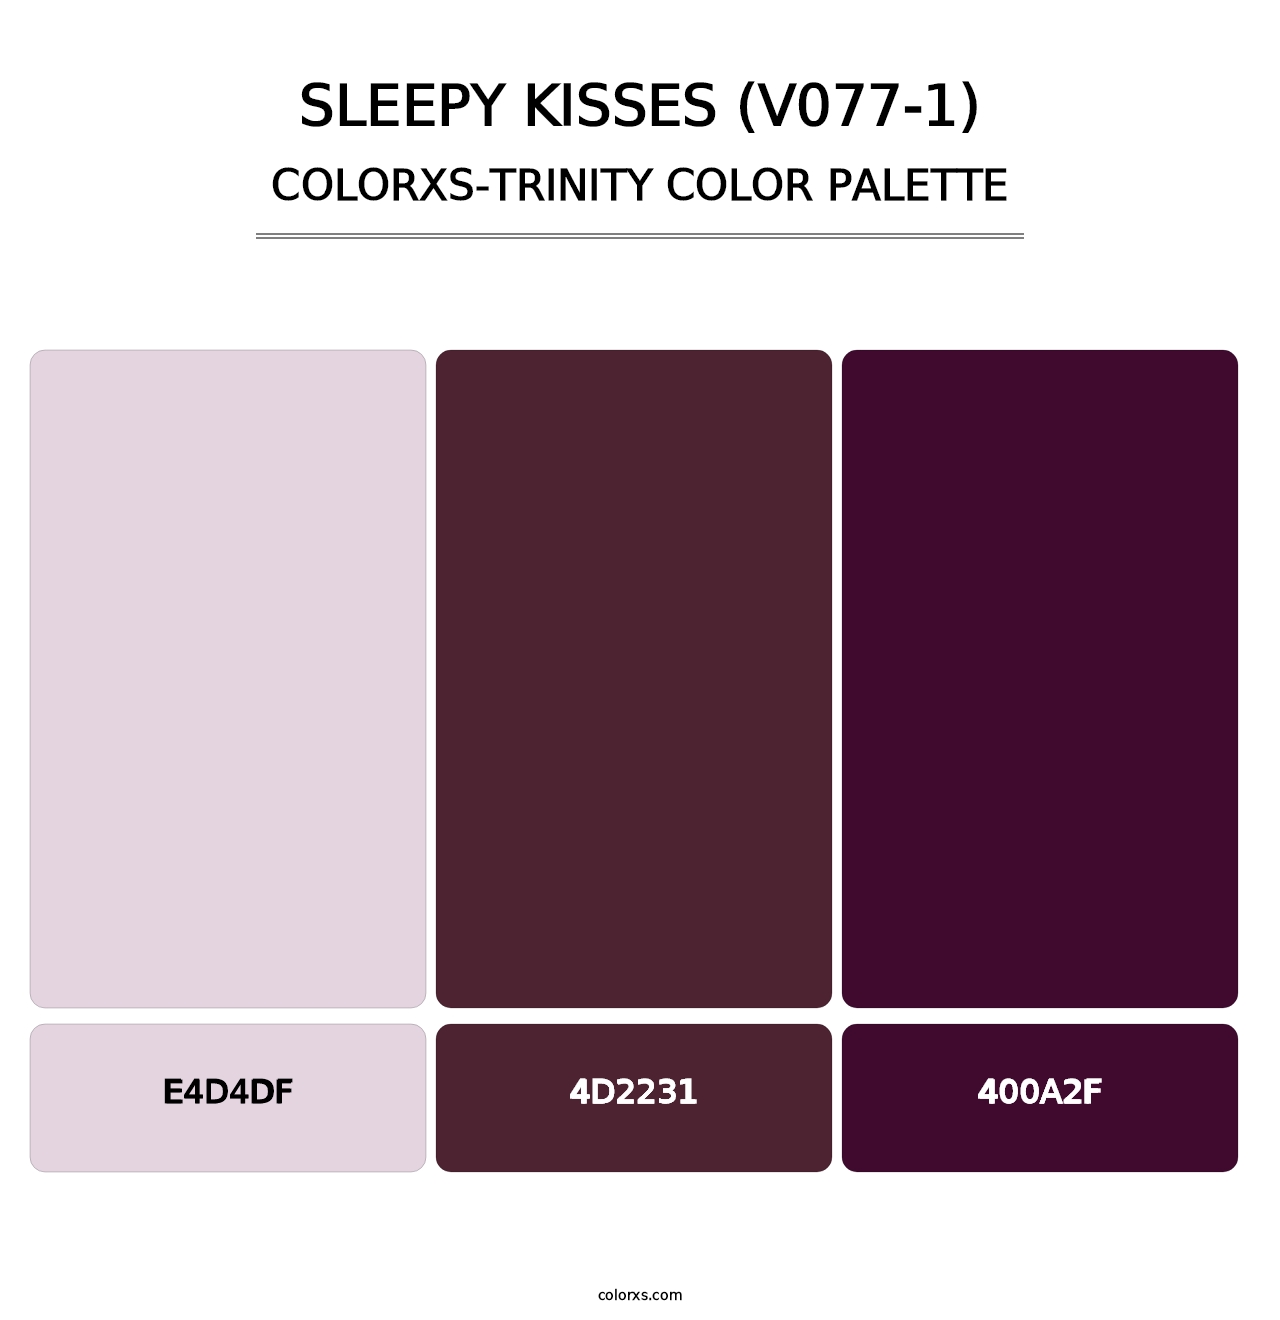 Sleepy Kisses (V077-1) - Colorxs Trinity Palette